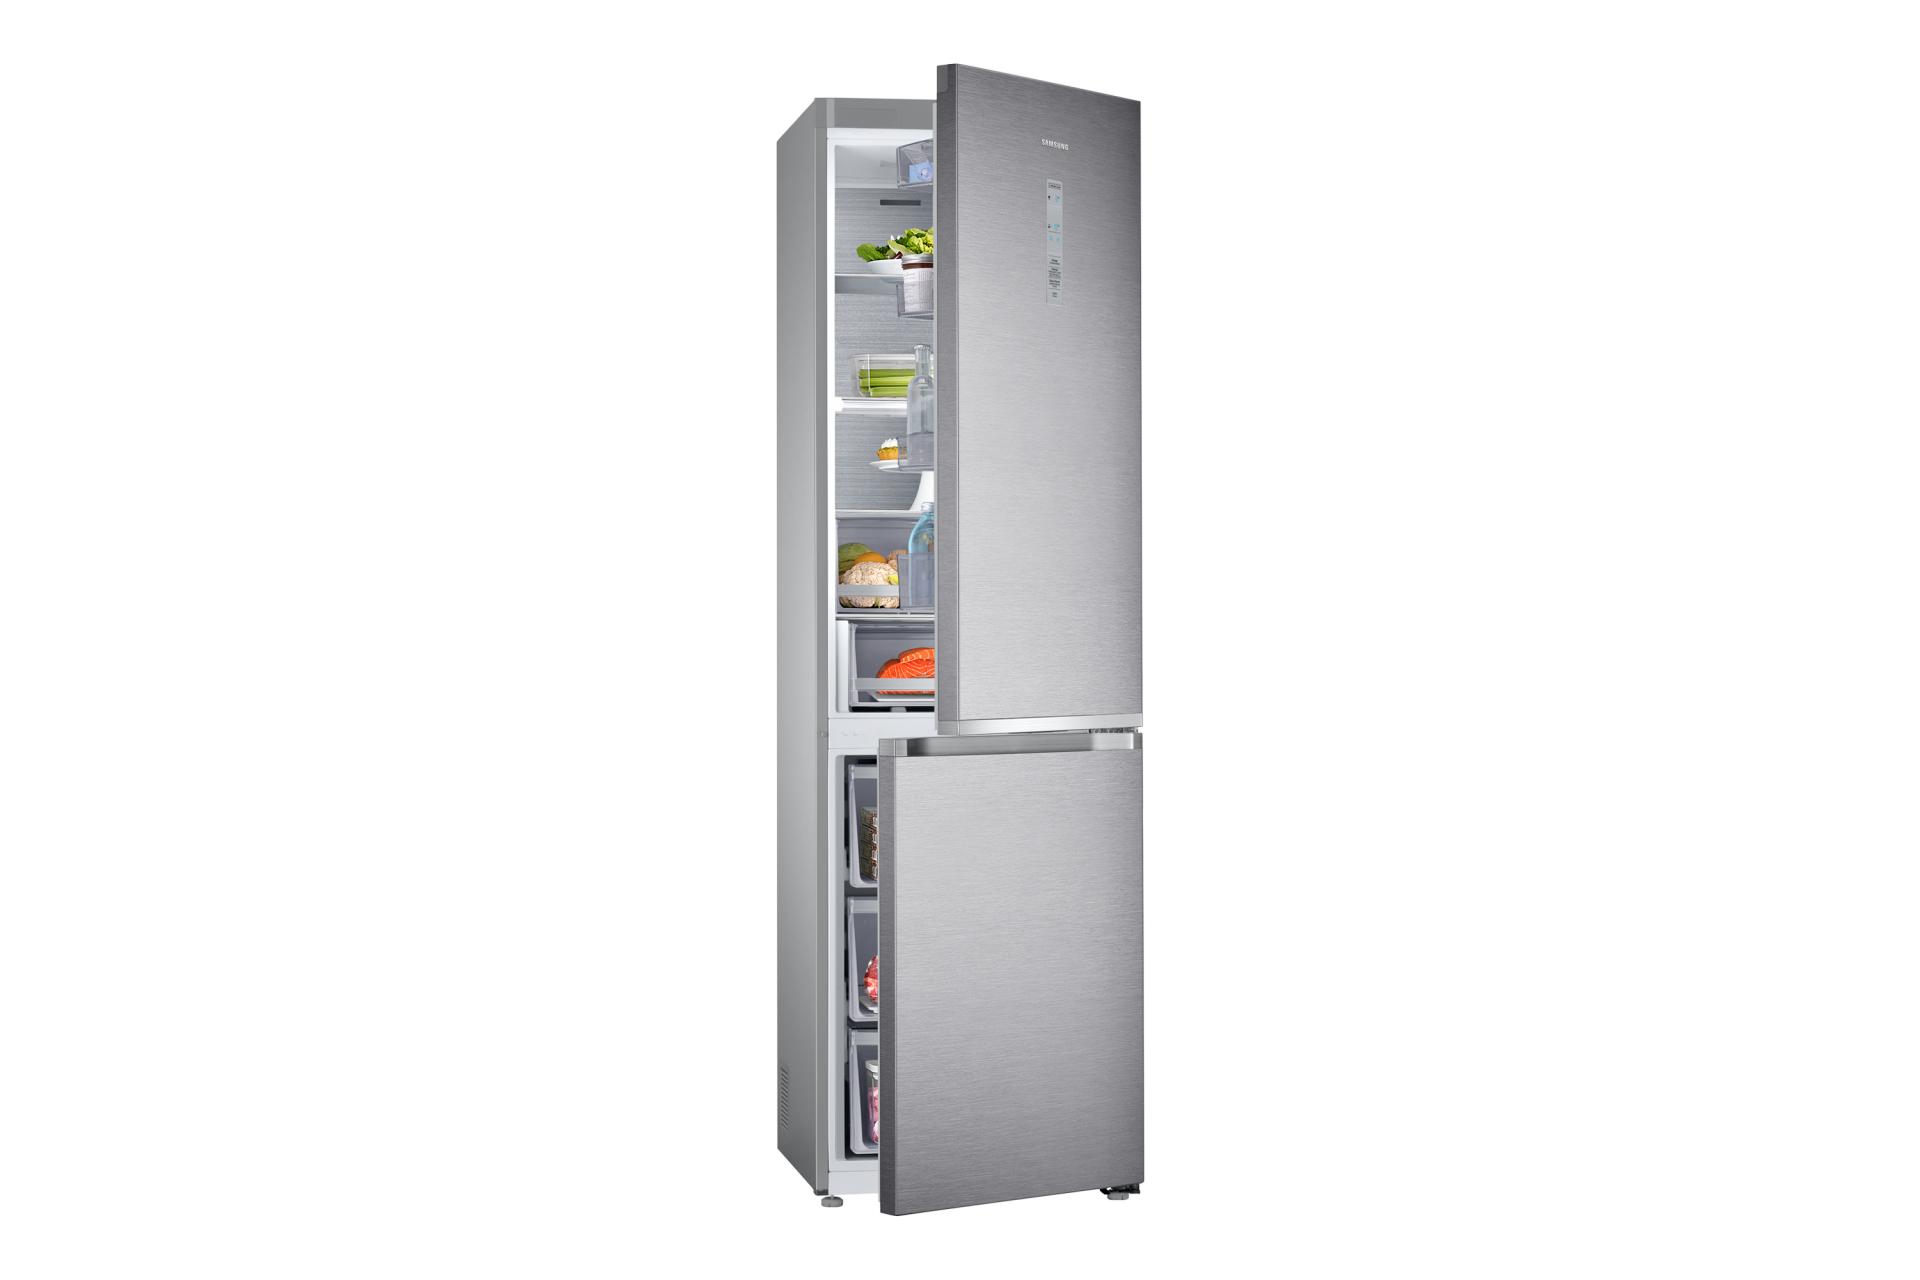 Samsung выводит на рынок холодильник RB7000 с бесплатной доставкой по России